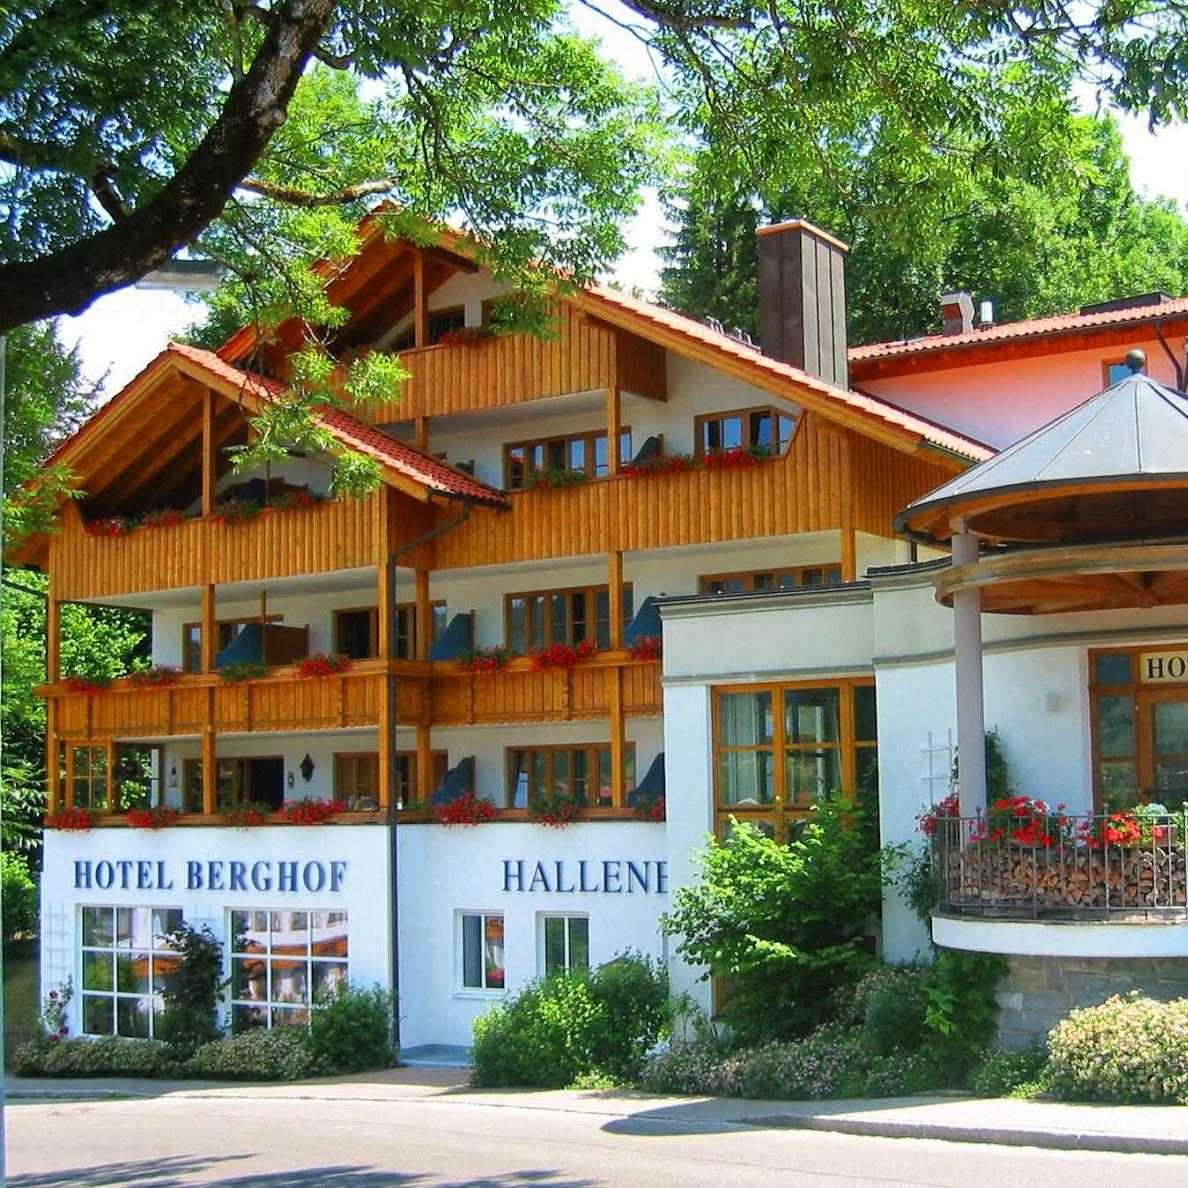 Restaurant "Hotel Berghof" in Pfronten